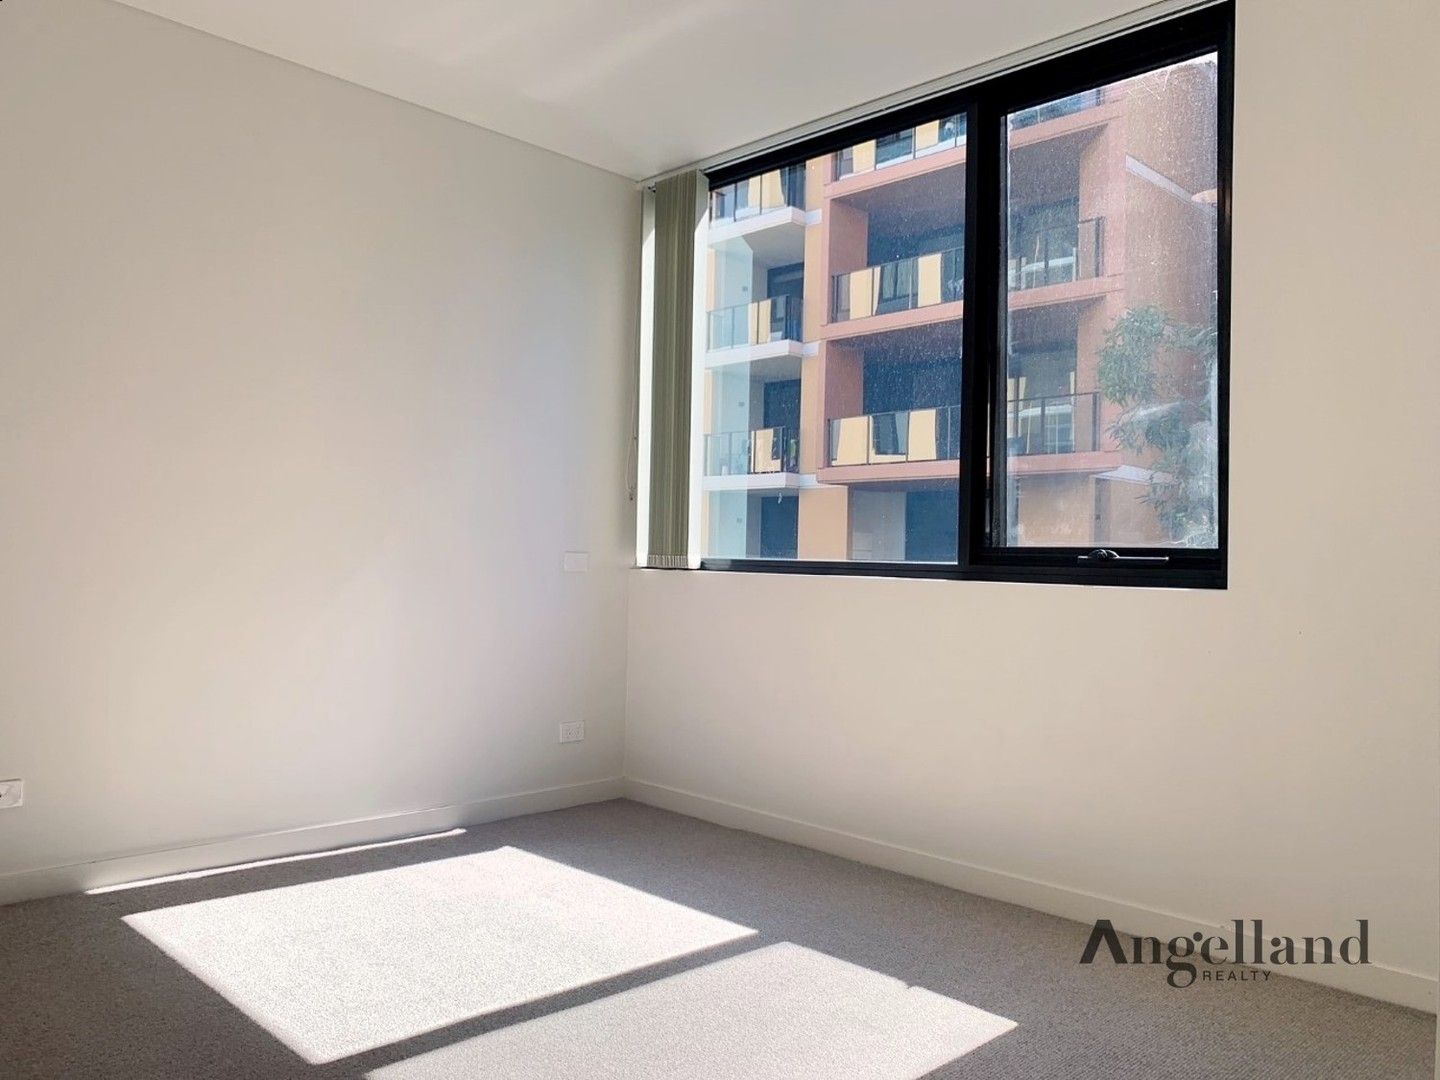 2 bedrooms Apartment / Unit / Flat in 313/21 Waitara Avenue WAITARA NSW, 2077